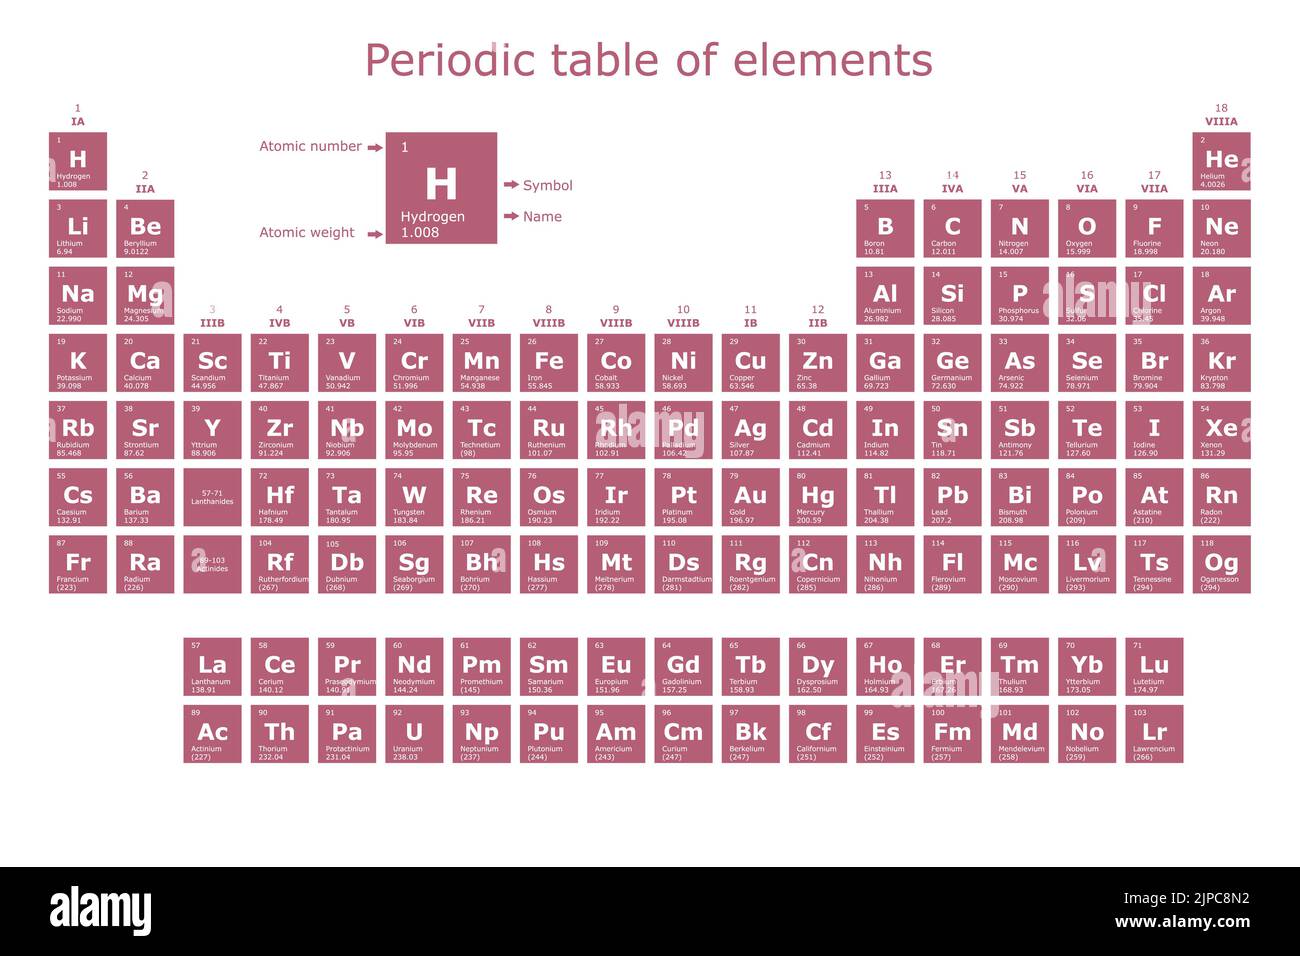 Tavola periodica degli elementi con il loro numero atomico, peso atomico, nome dell'elemento e simbolo Illustrazione Vettoriale